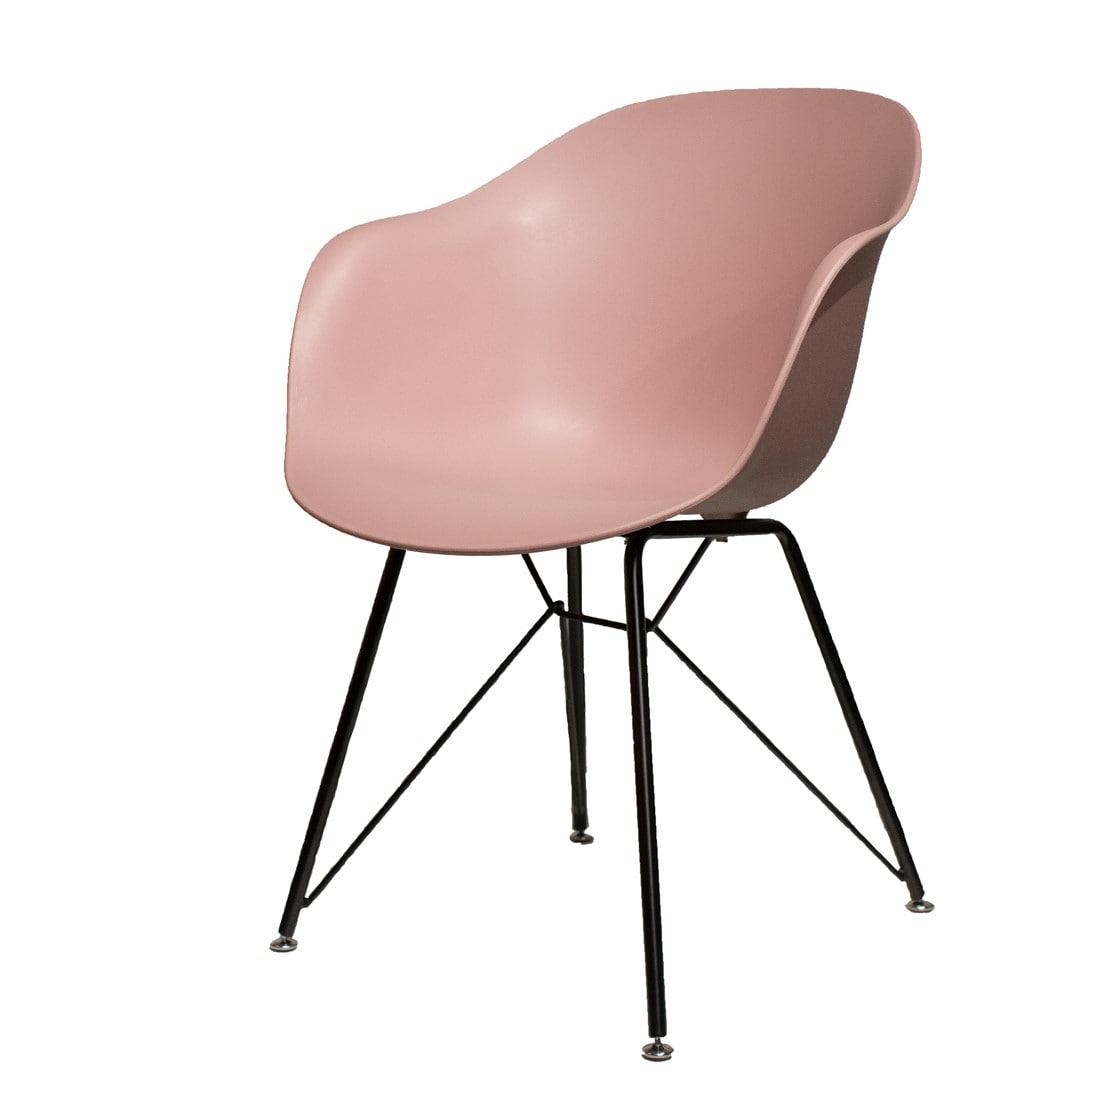 Элитная мебель в мебельных магазинах RAROOM: стулья